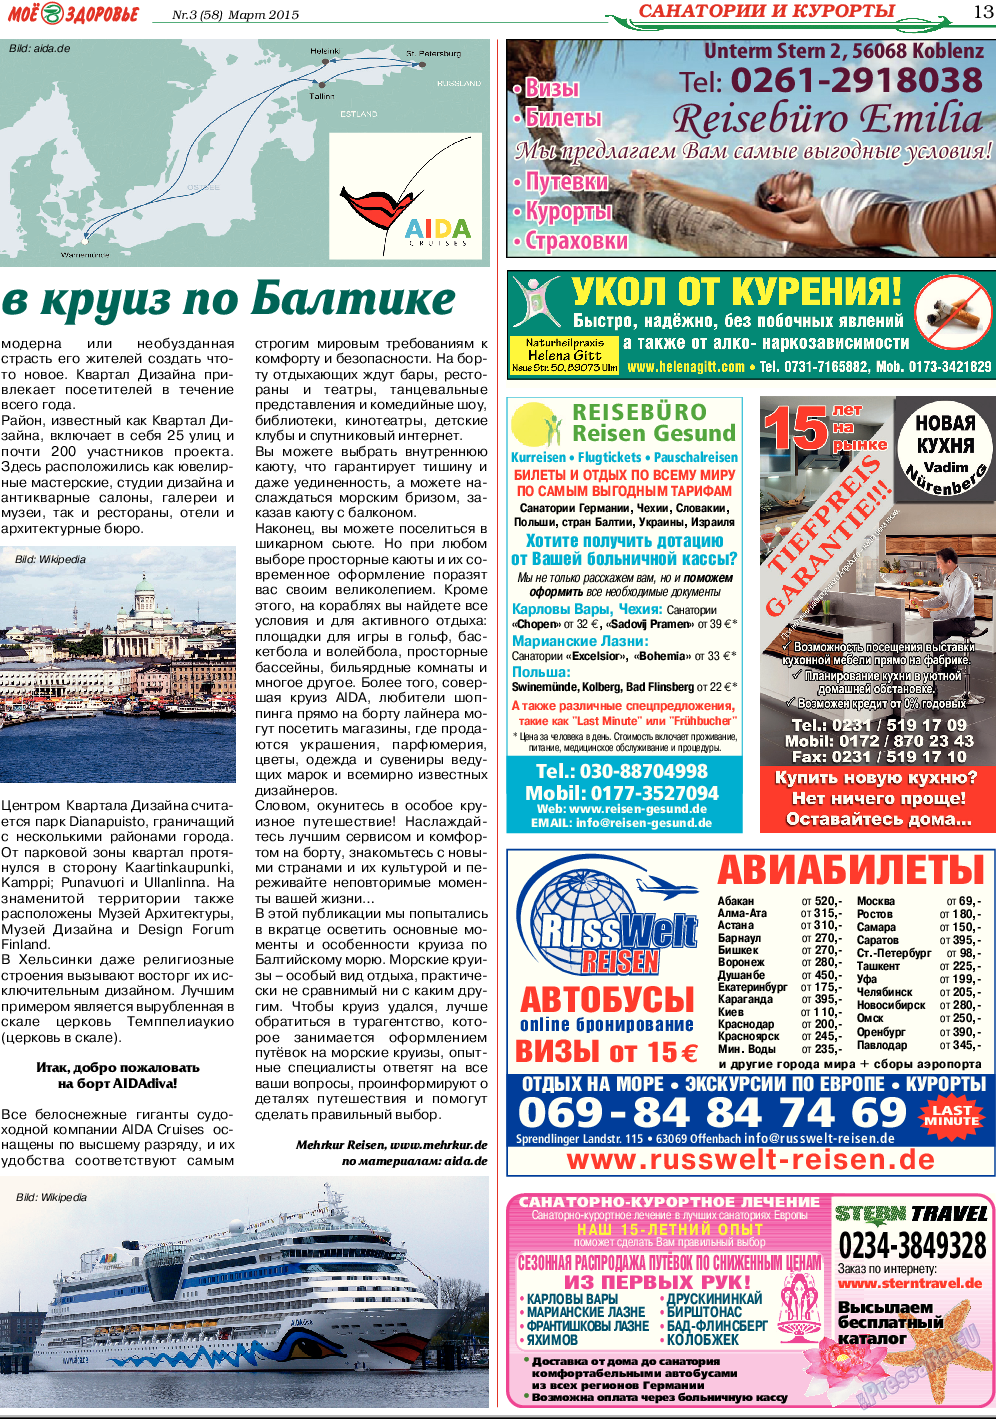 Кругозор (газета). 2015 год, номер 3, стр. 13